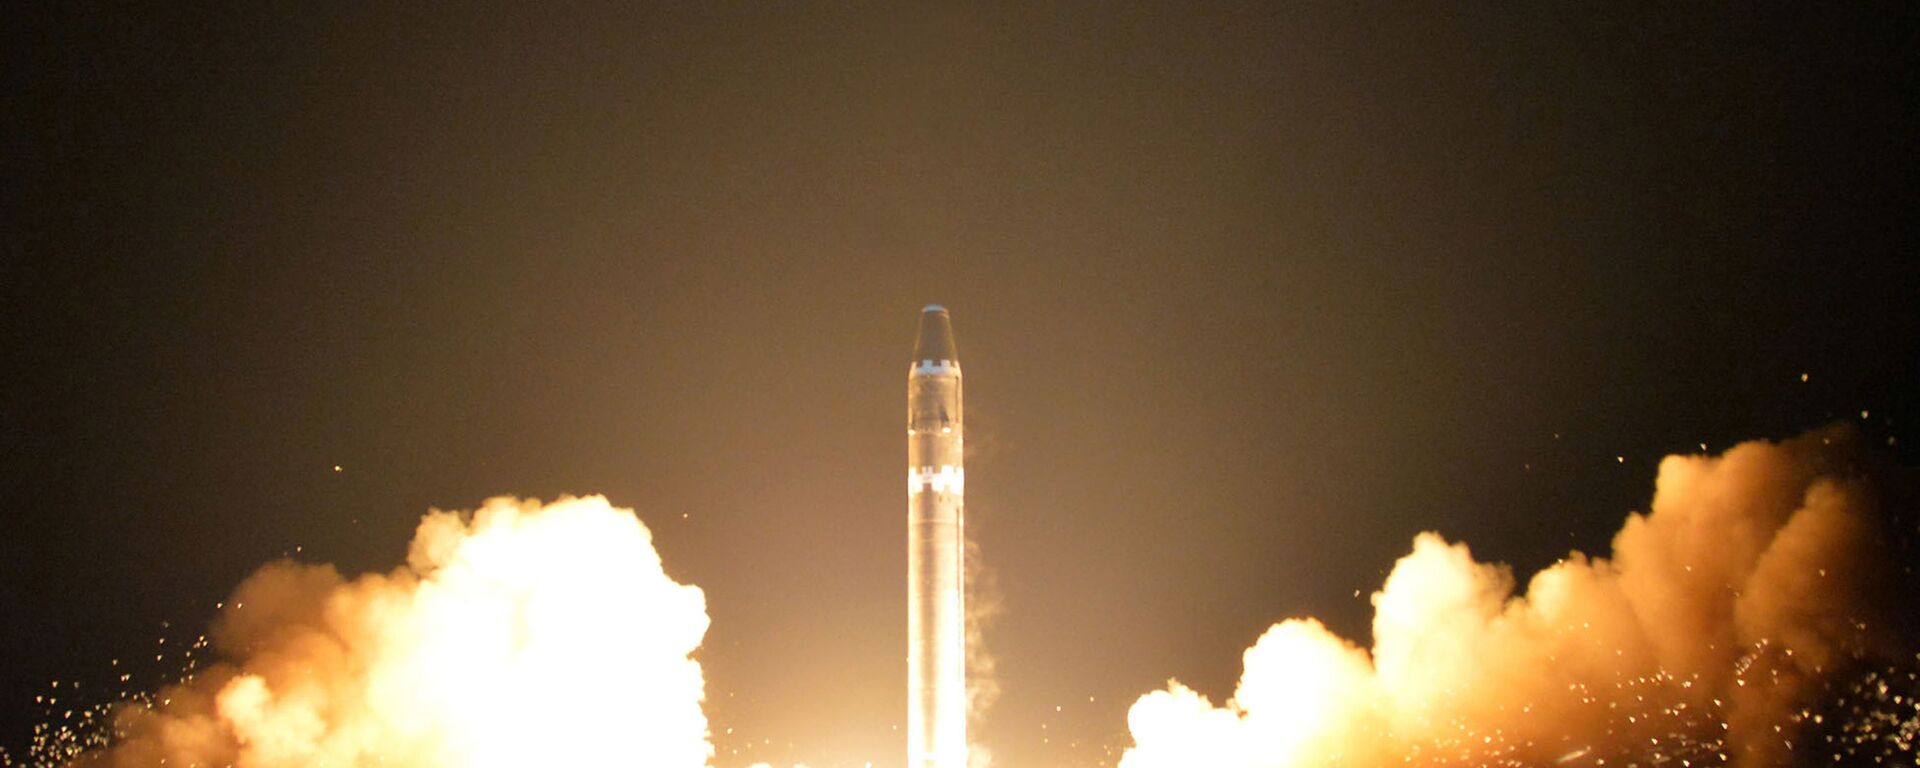 Lançamento do míssil balístico intercontinental norte-coreano Hwasong-15 - Sputnik Brasil, 1920, 01.04.2022